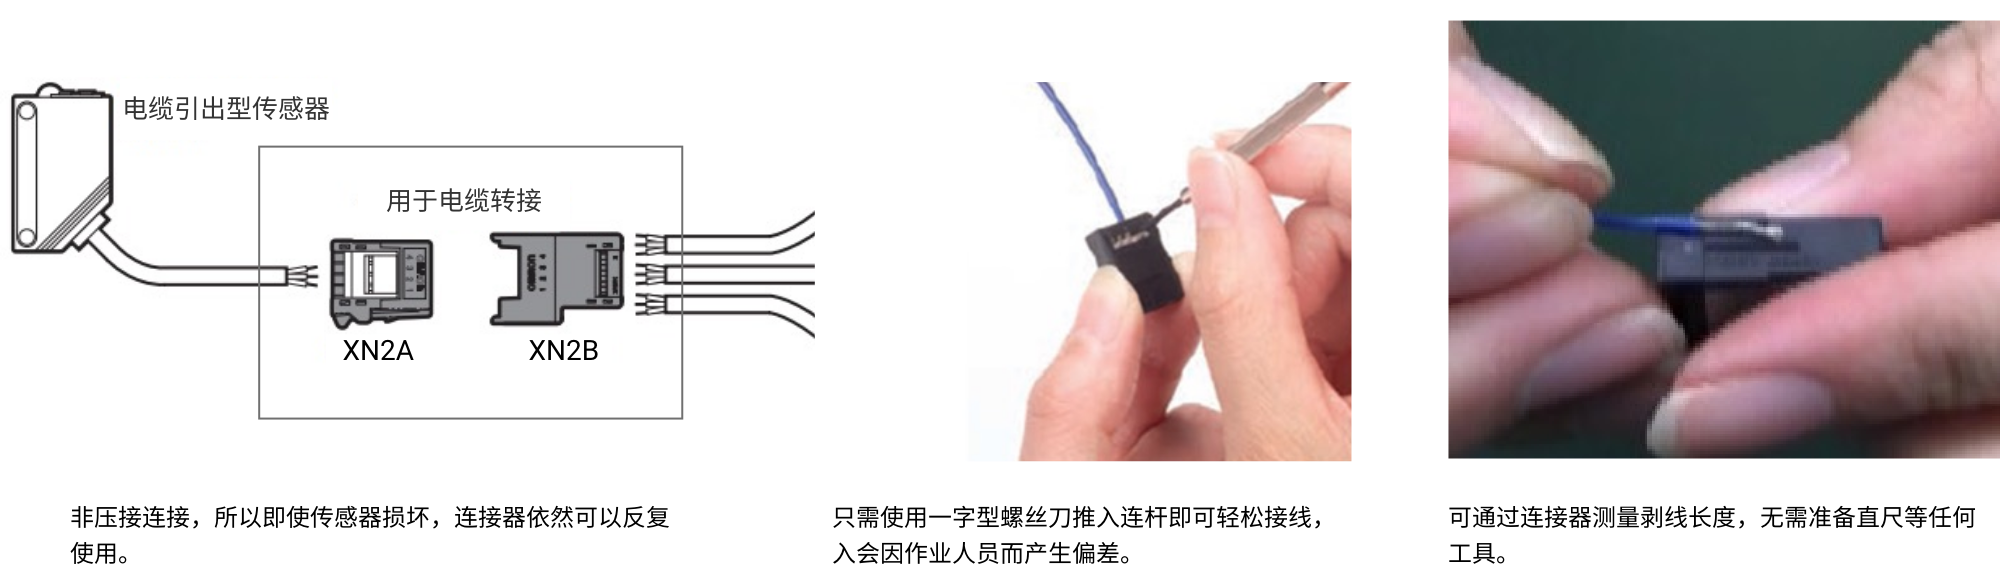 非压接连接，所以即使传感器损坏，连接器依然可以反复使用。只需使用一字型螺丝刀推入连杆即可轻松接线，入会因作业人员而产生偏差。可通过连接器测量剥线长度，无需准备直尺等任何工具。